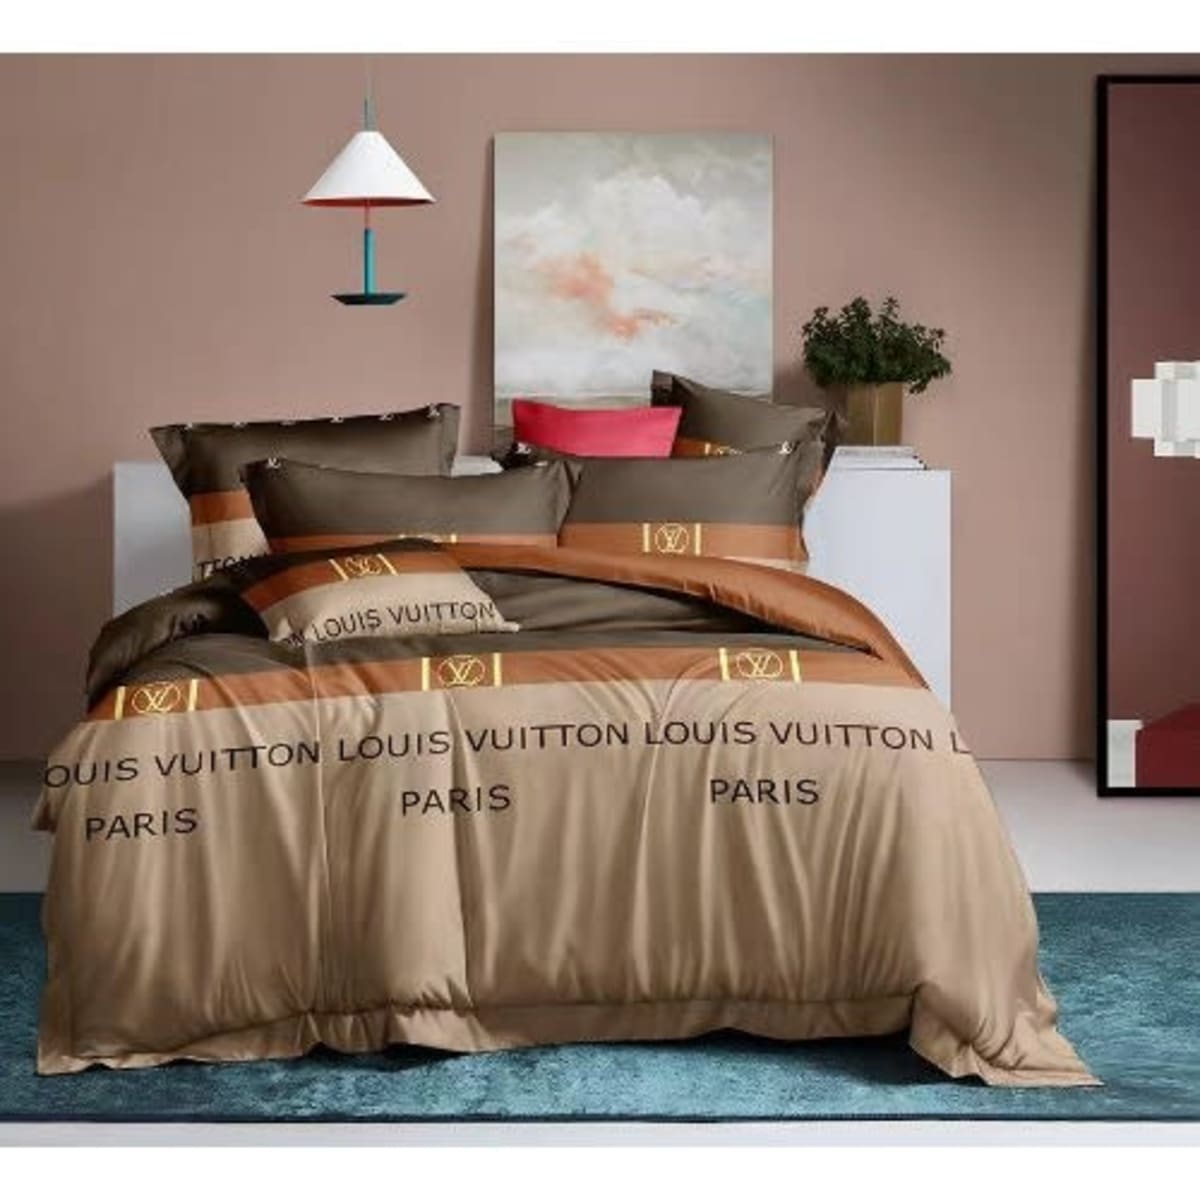 Shop Bedsheets Louis Vuitton online